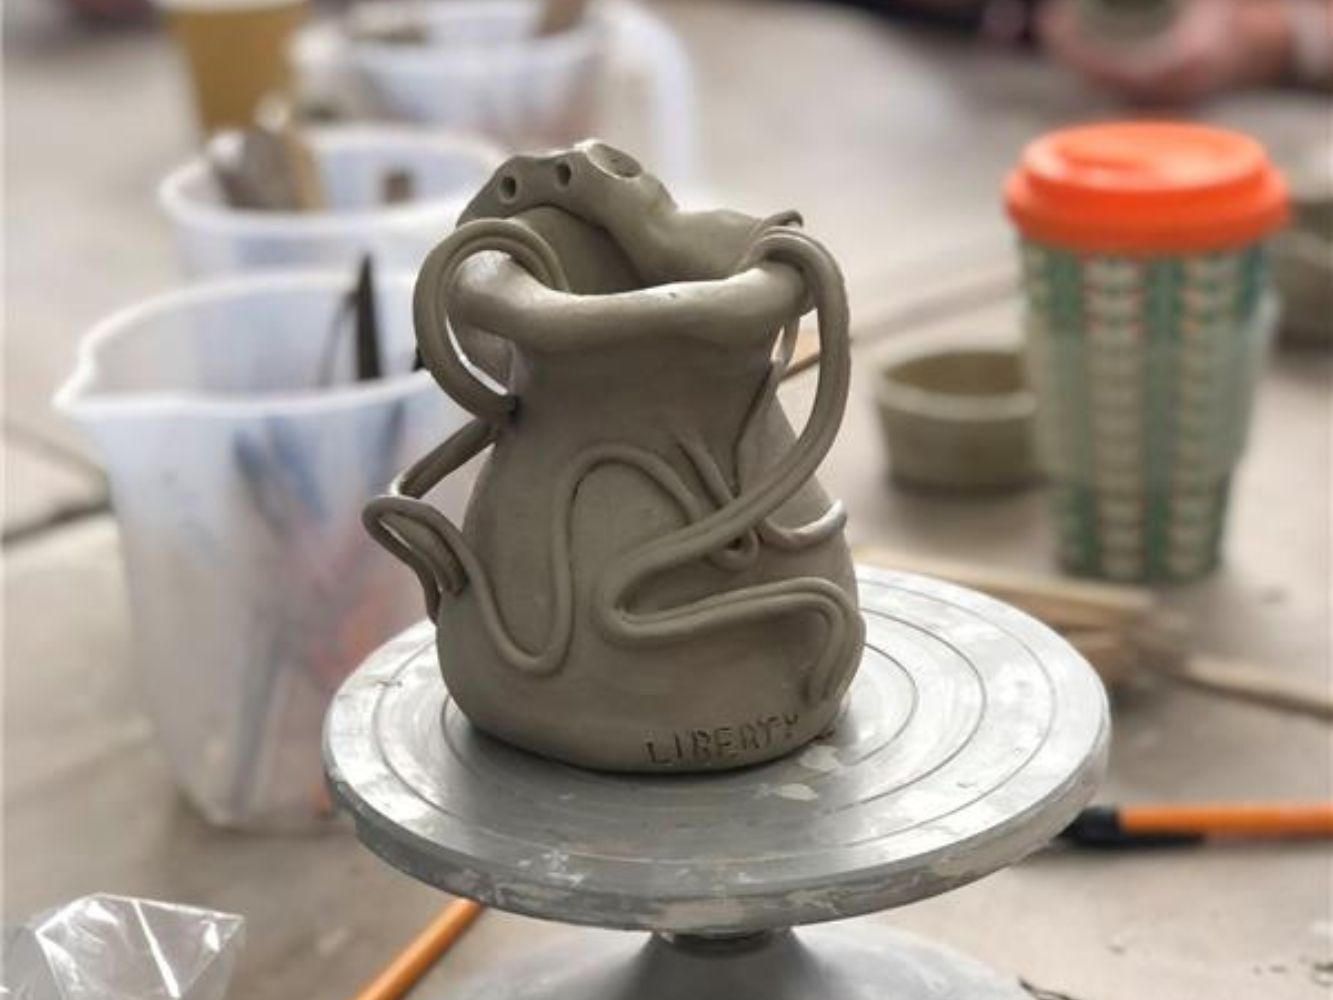 A pottery item